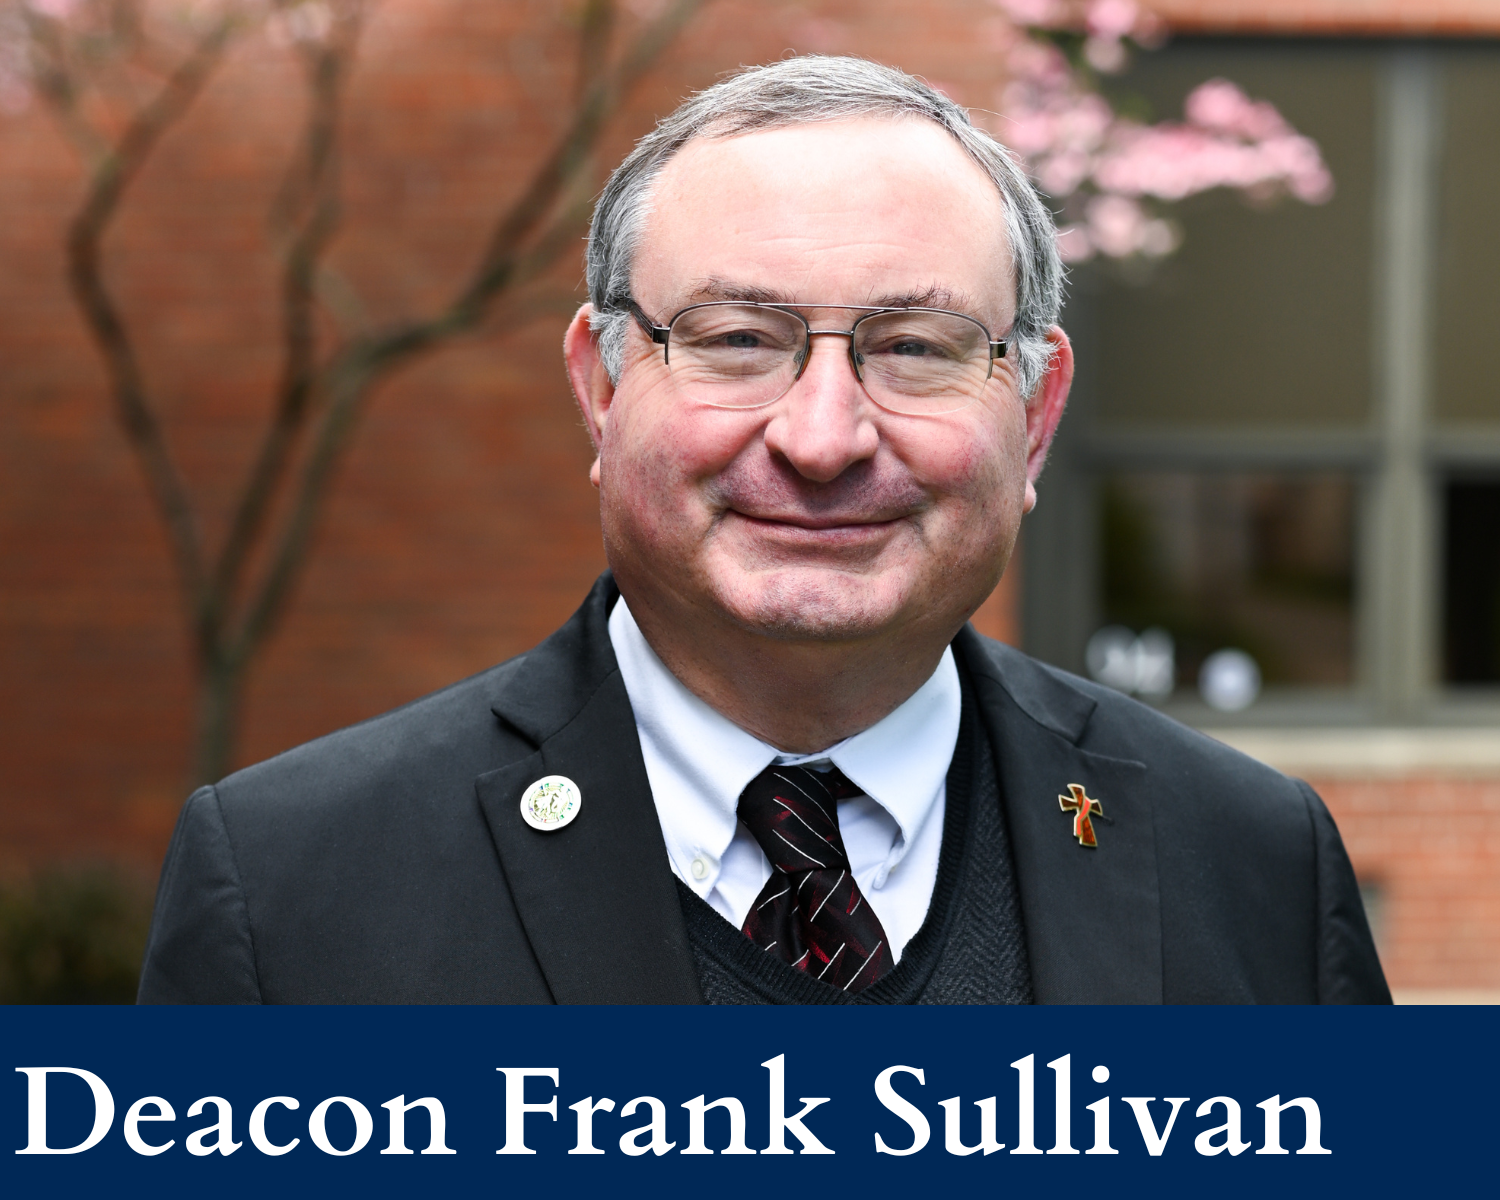 Deacon Frank Sullivan